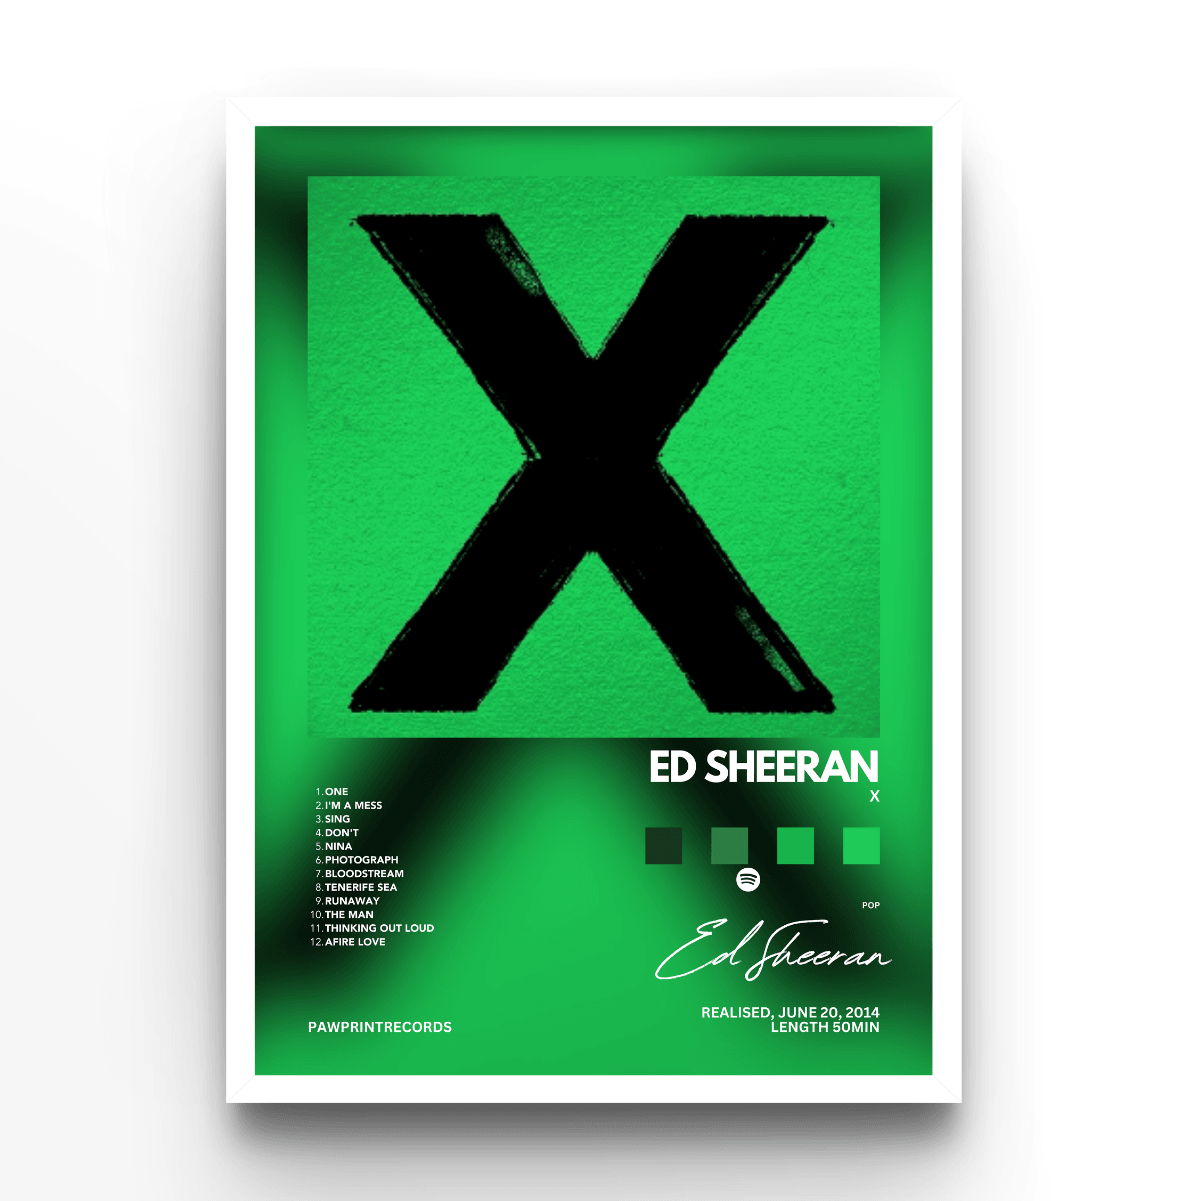 Ed Sheeran X - A4, A3, A2 Posters Base - Poster Print Shop / Art Prints / PostersBase